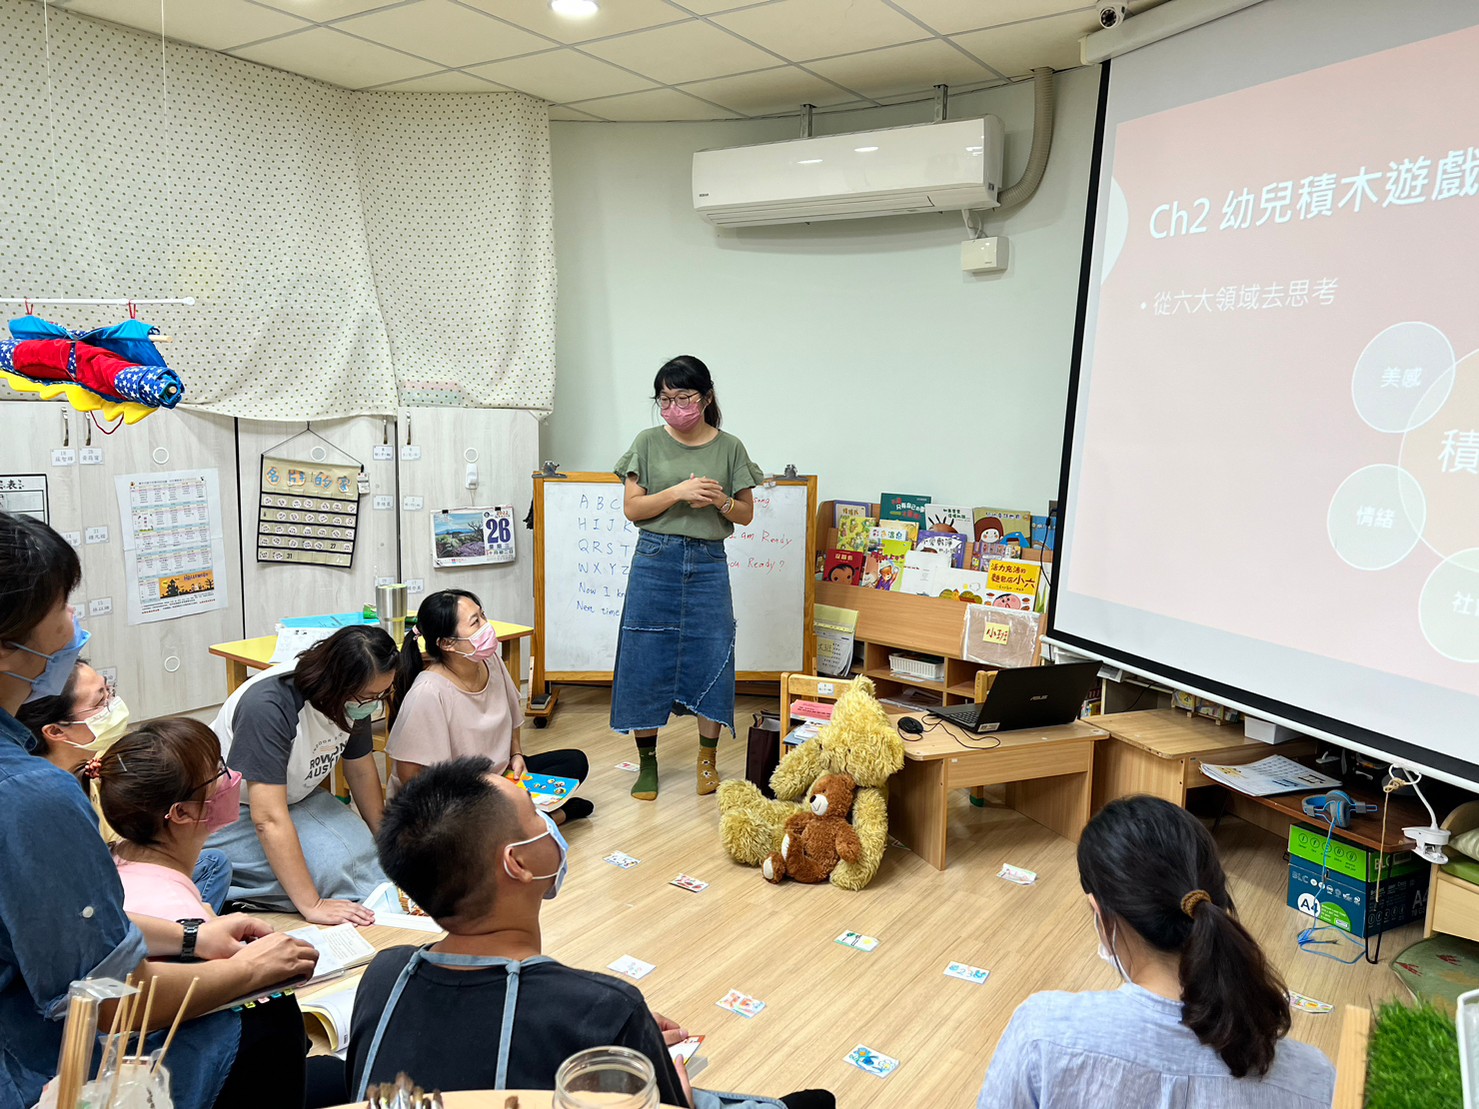 臺中市廍子非營利幼兒園園內社群帶領人進行課程規劃分享及討論。